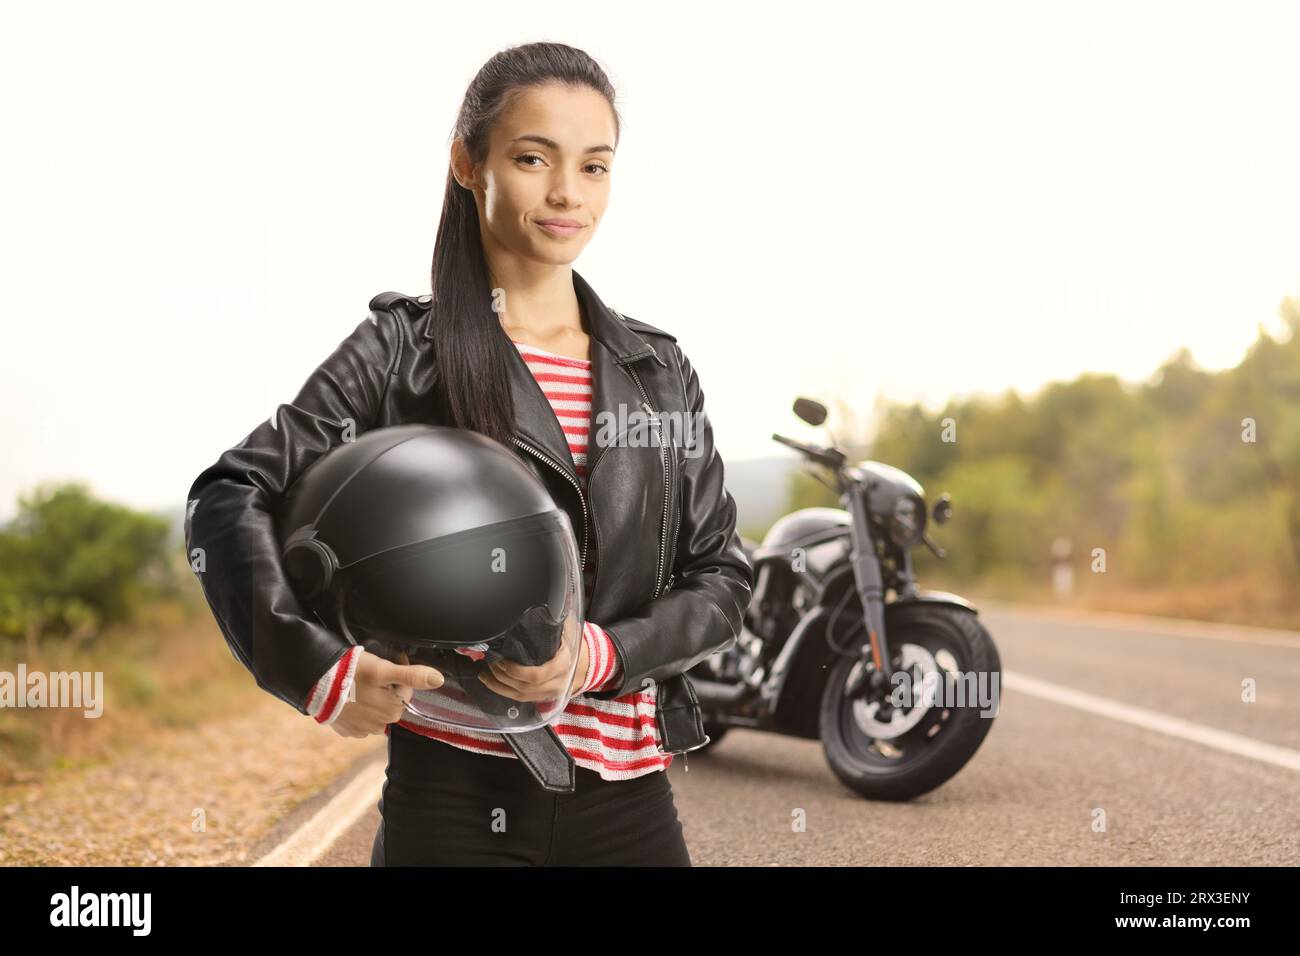 Jeune motard femelle avec un hachoir tenant un casque sur une route ouverte Banque D'Images